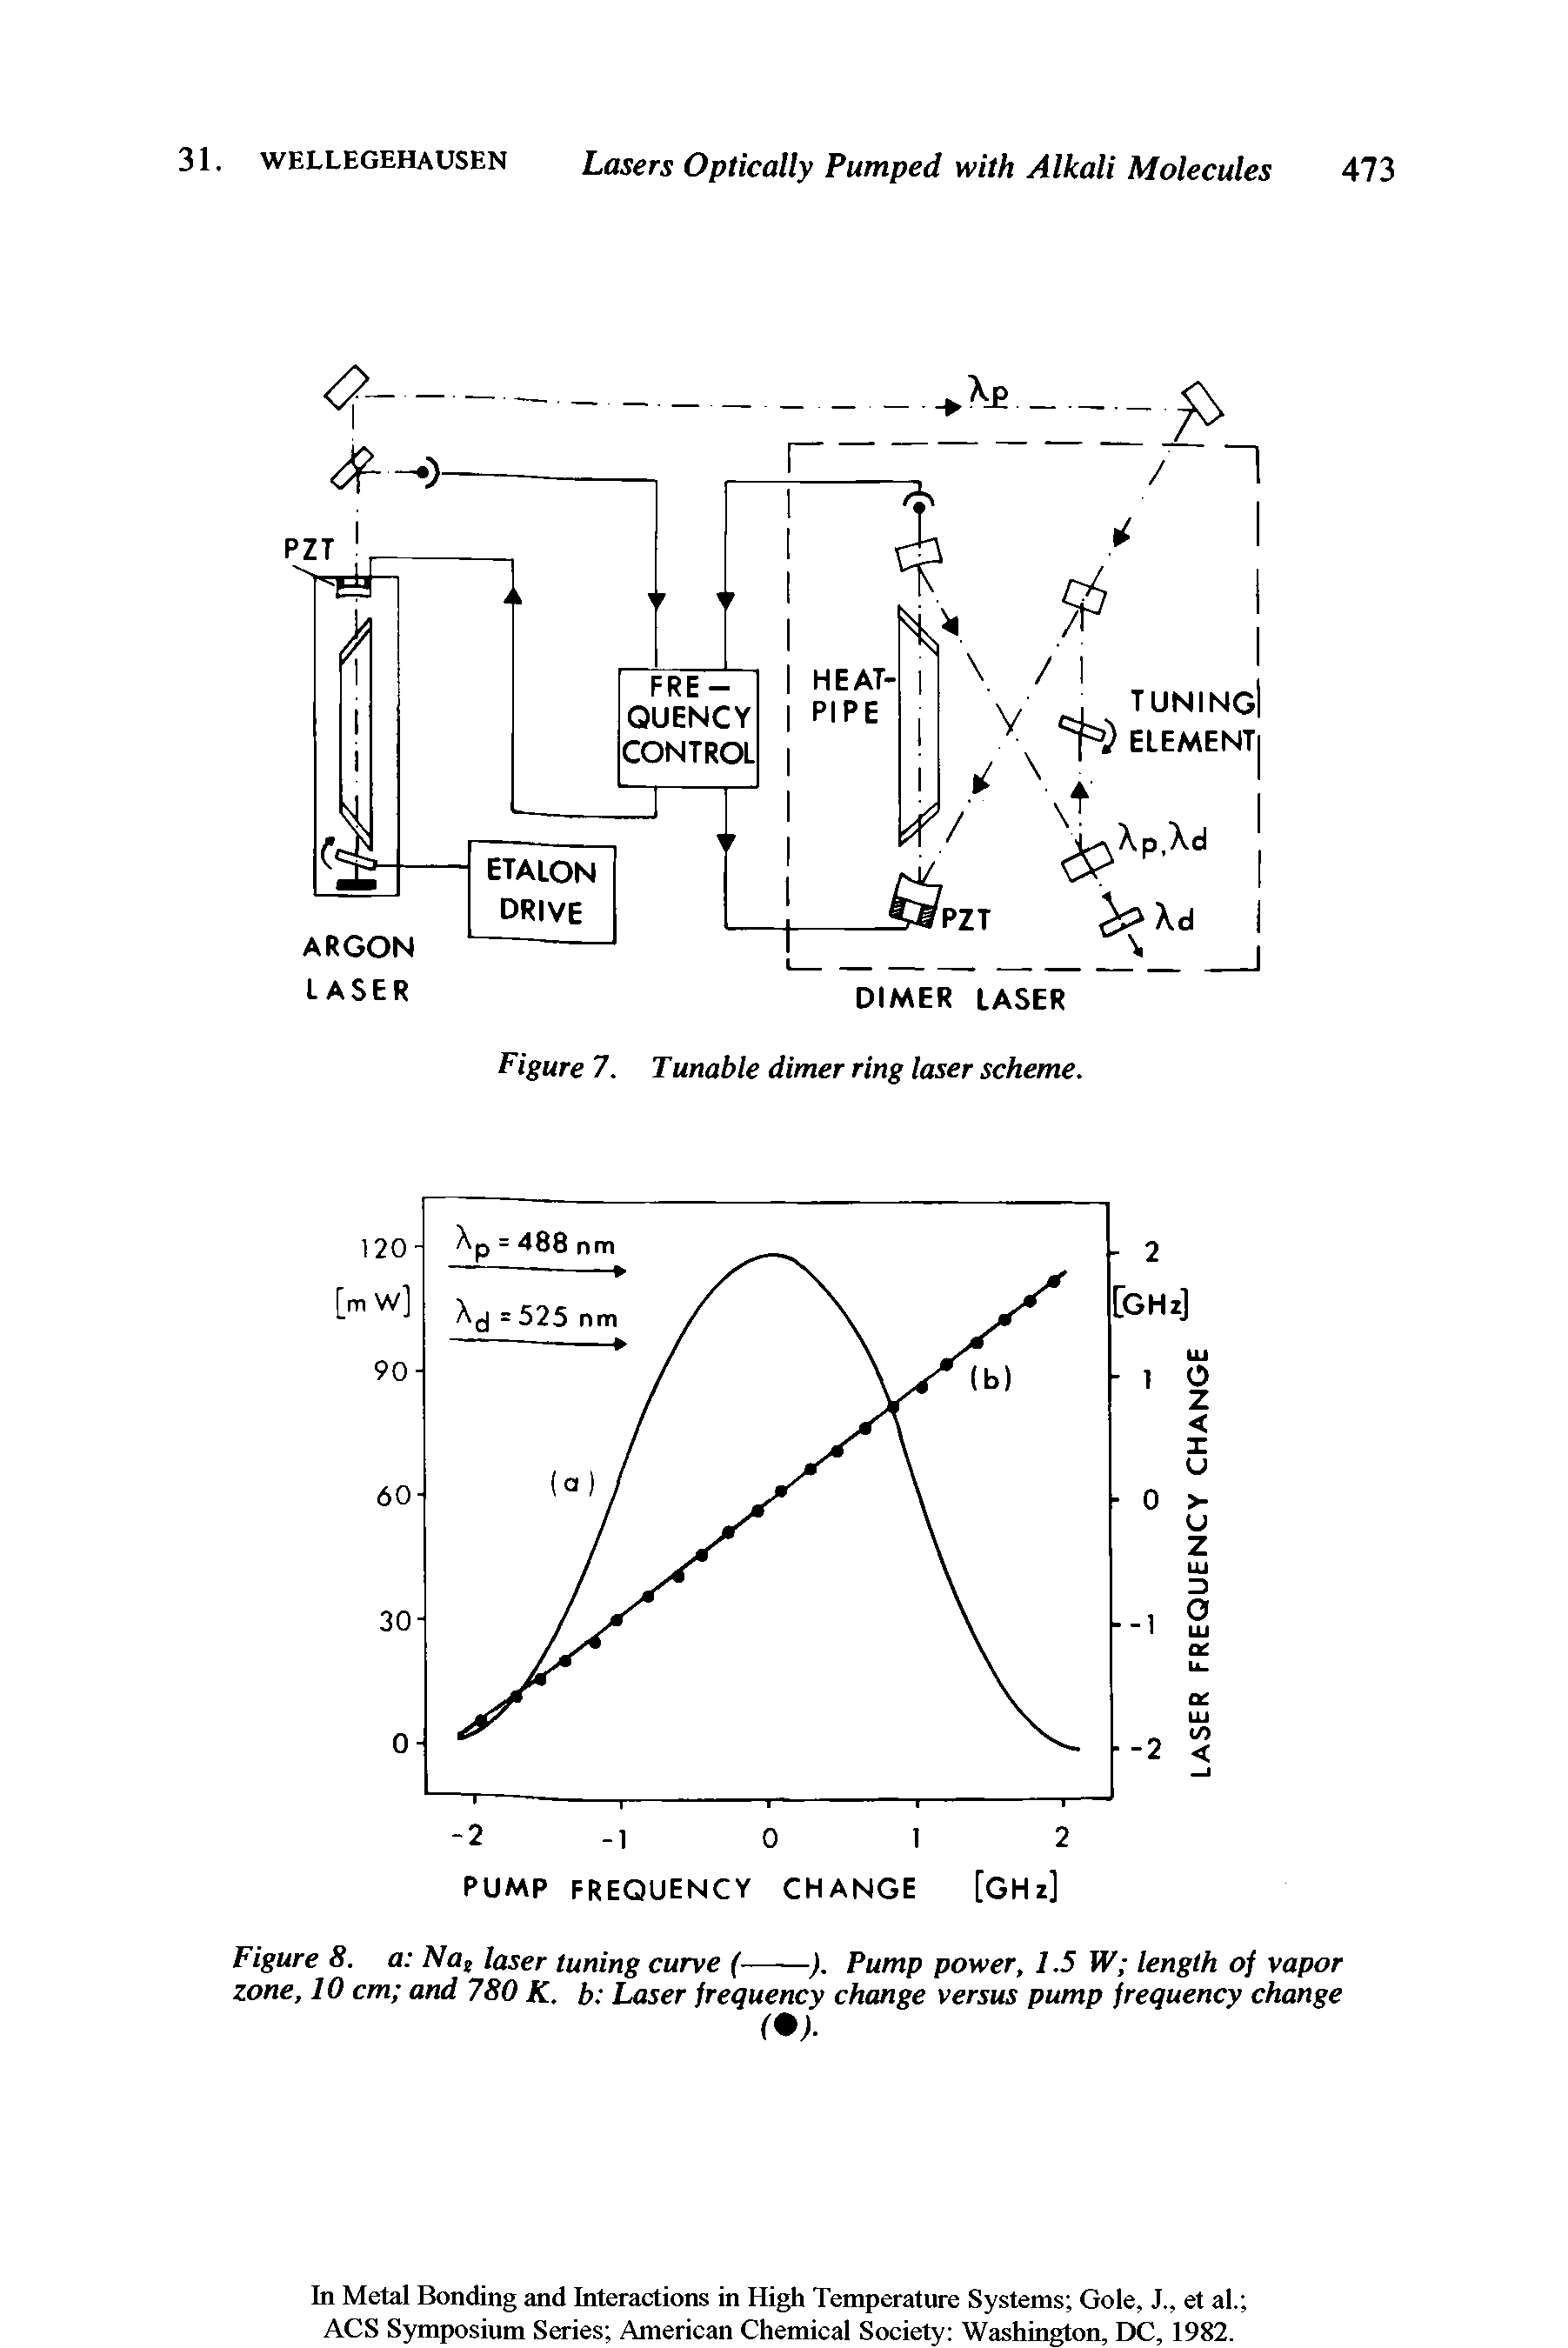 Figure 7. Tunable dimer ring laser scheme.